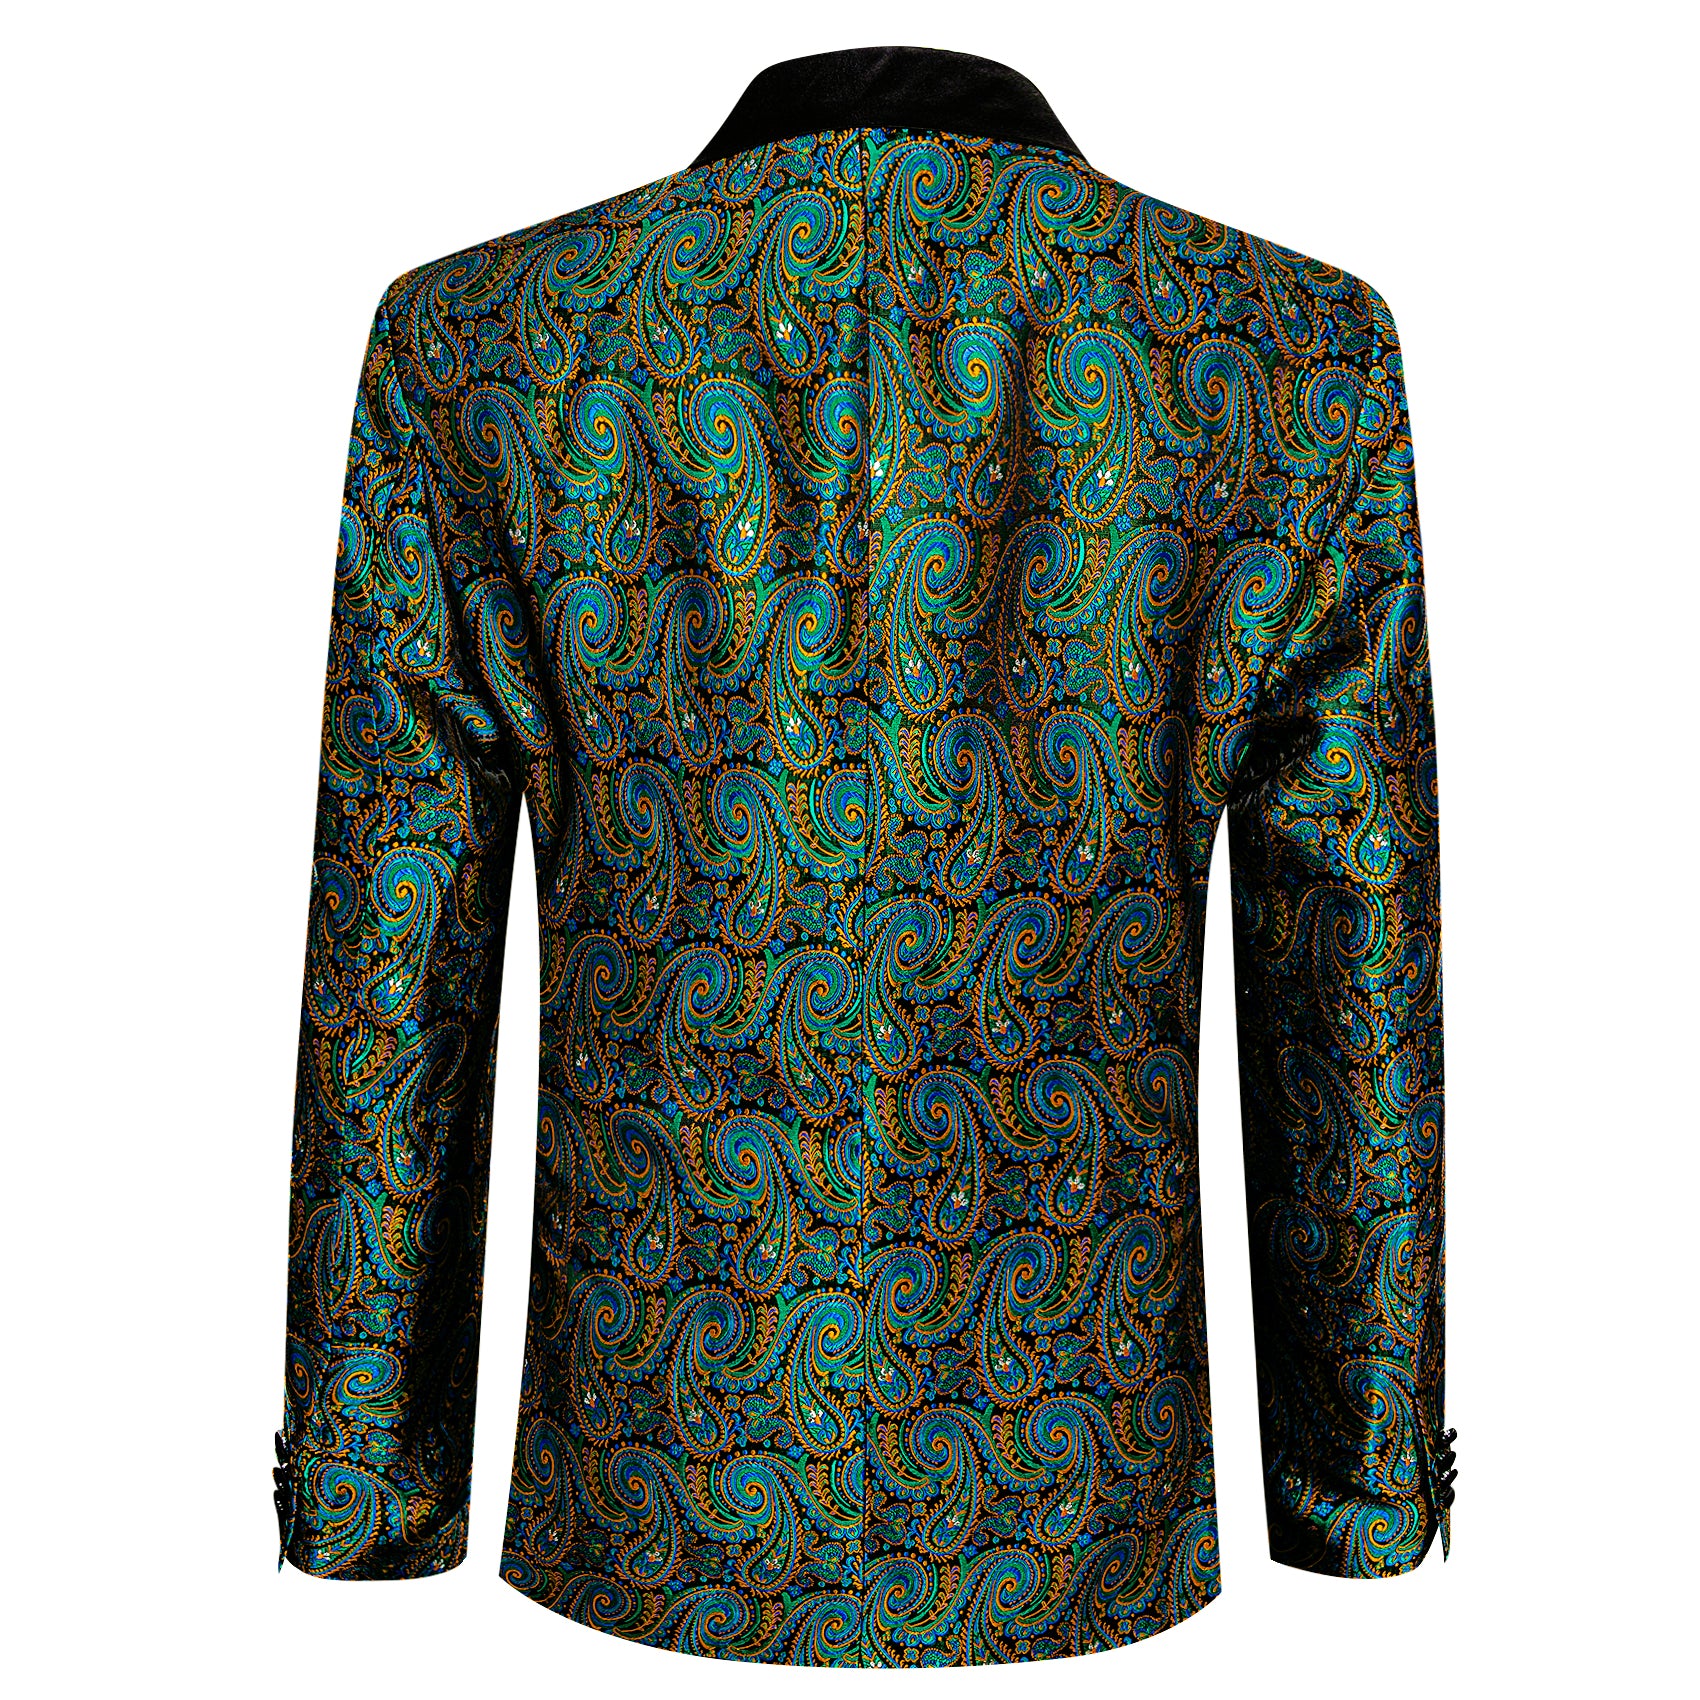 Men's Dress Party Blue Orange Floral Suit Jacket Slim One Button Stylish Blazer